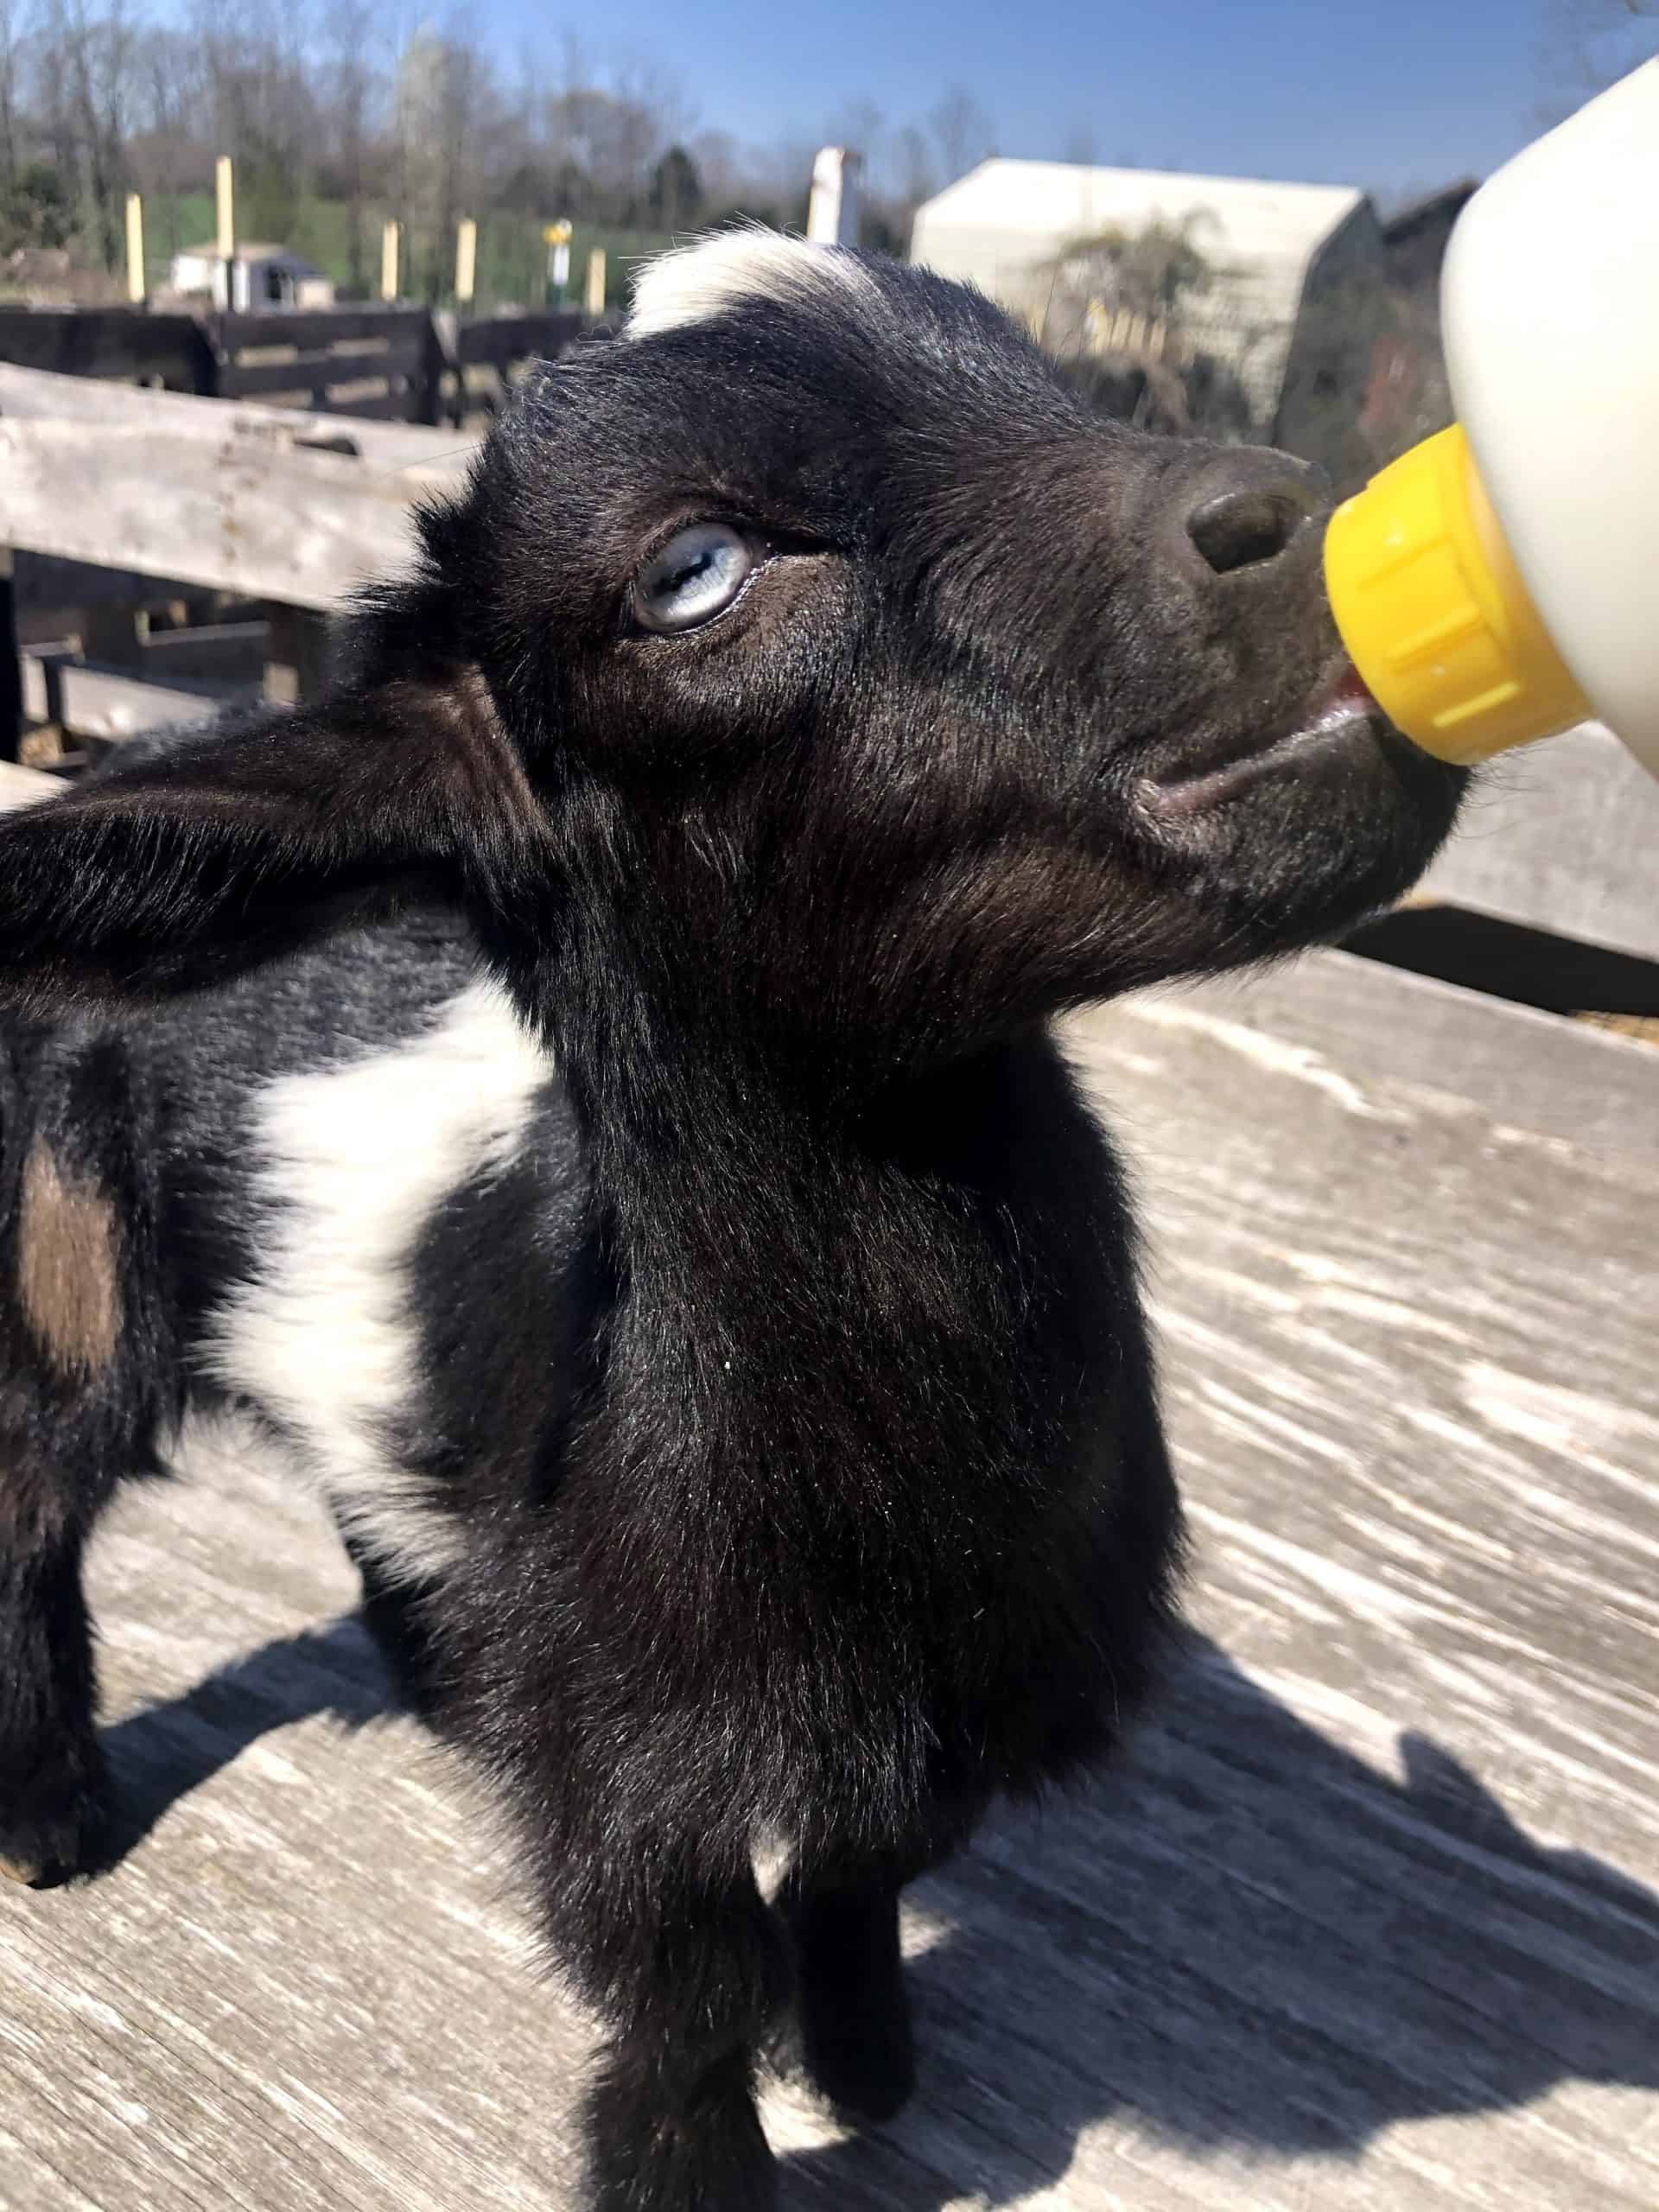 nigerian dwarf goat kid drinking milk bottle